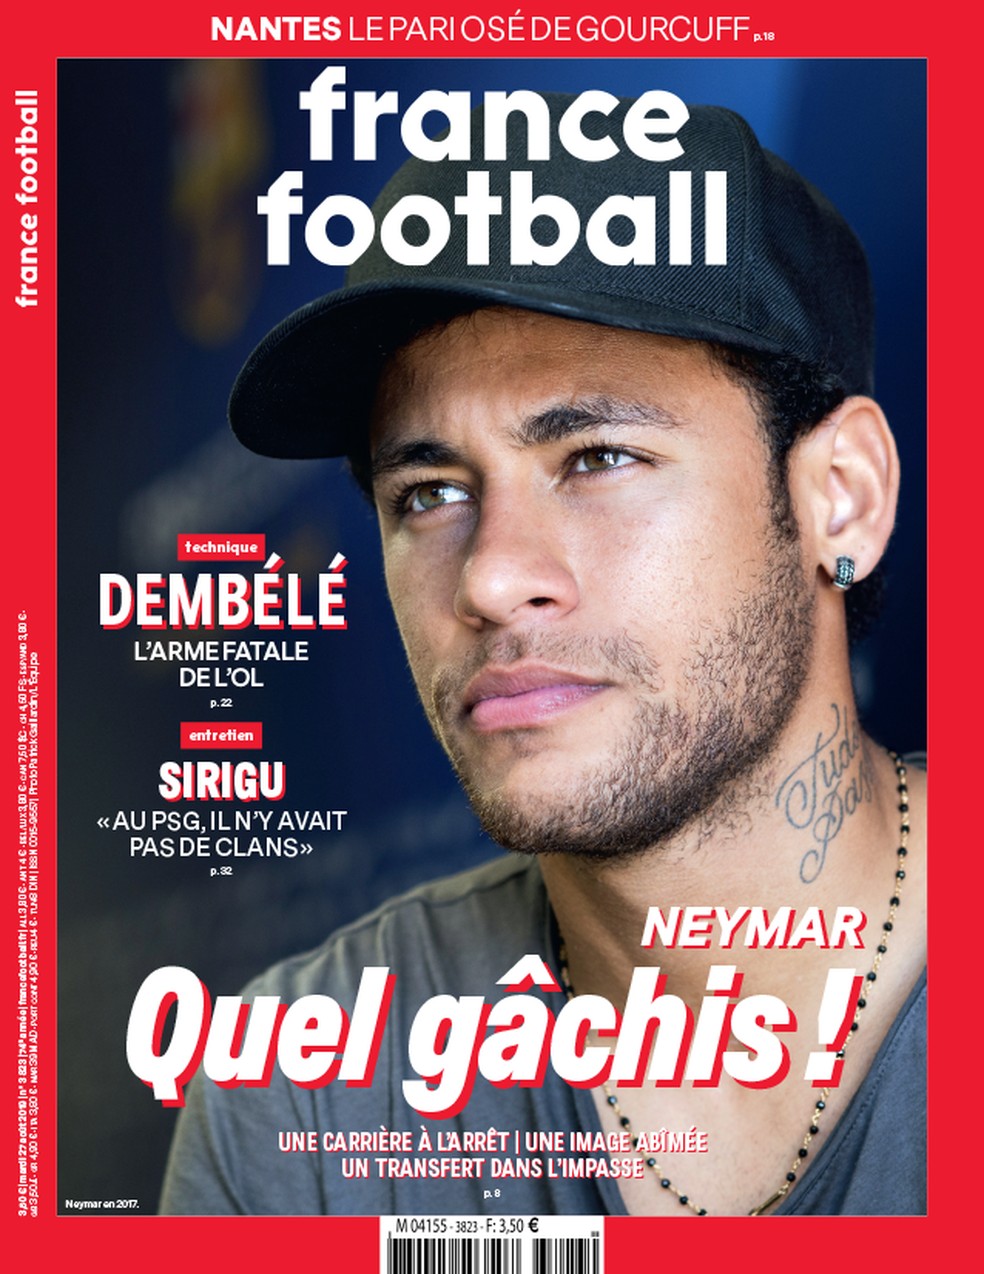 Neymar é capa da "France Football" — Foto: Reprodução / Site Oficial